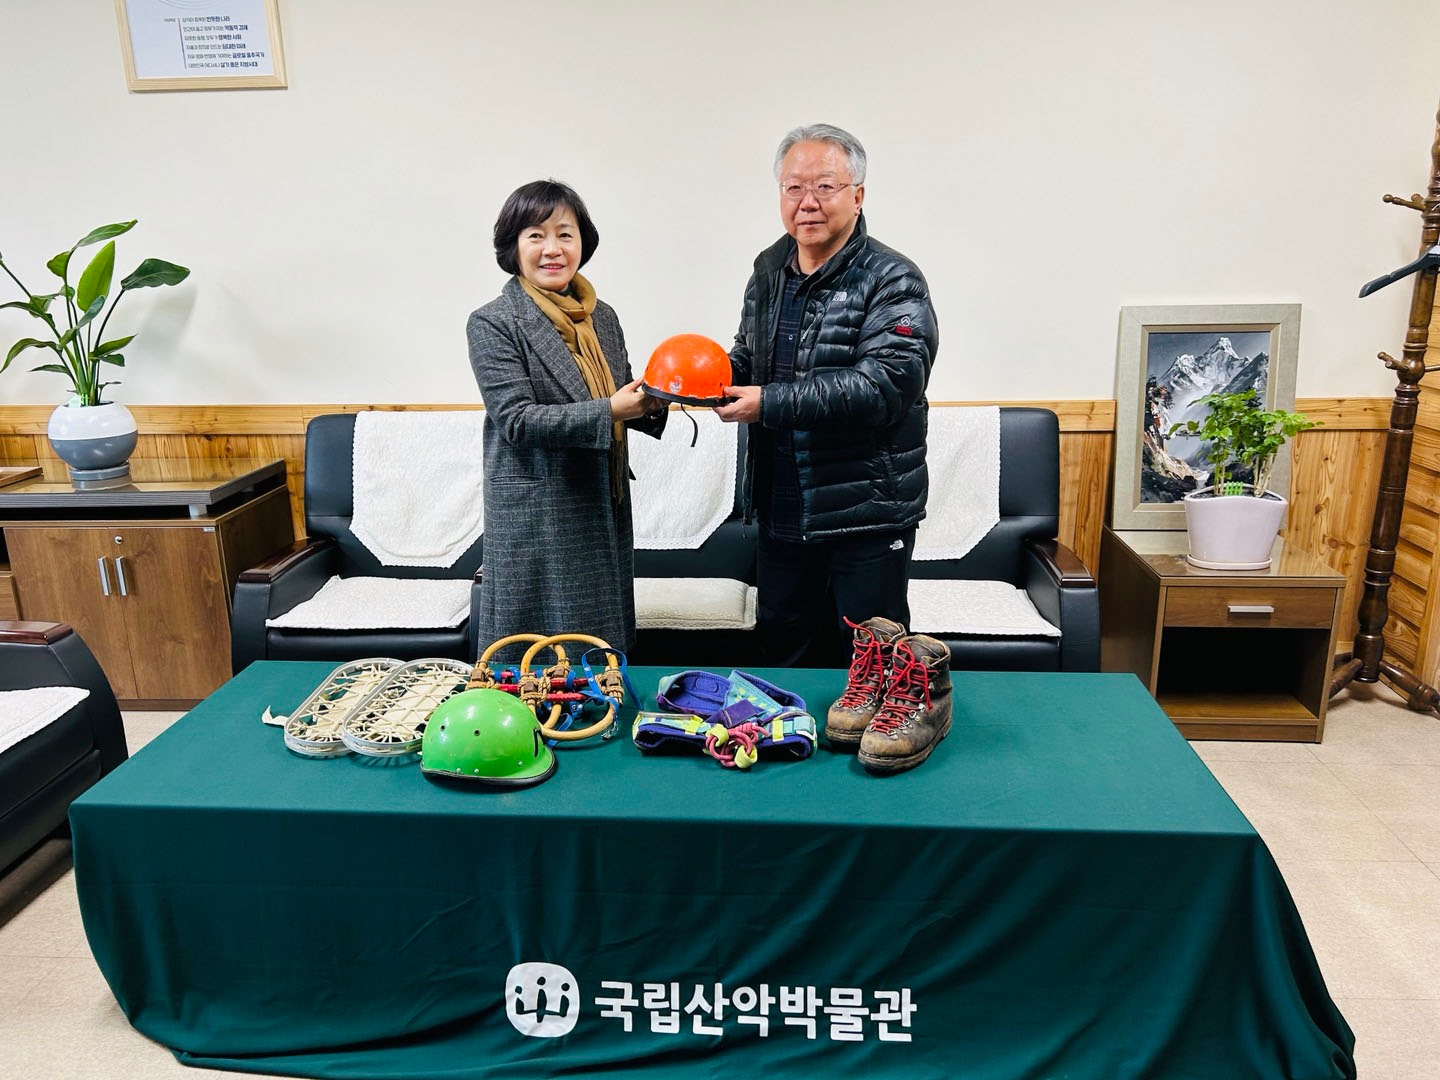 국립산악박물관, 김병준 故정광식 유물 기증 접수